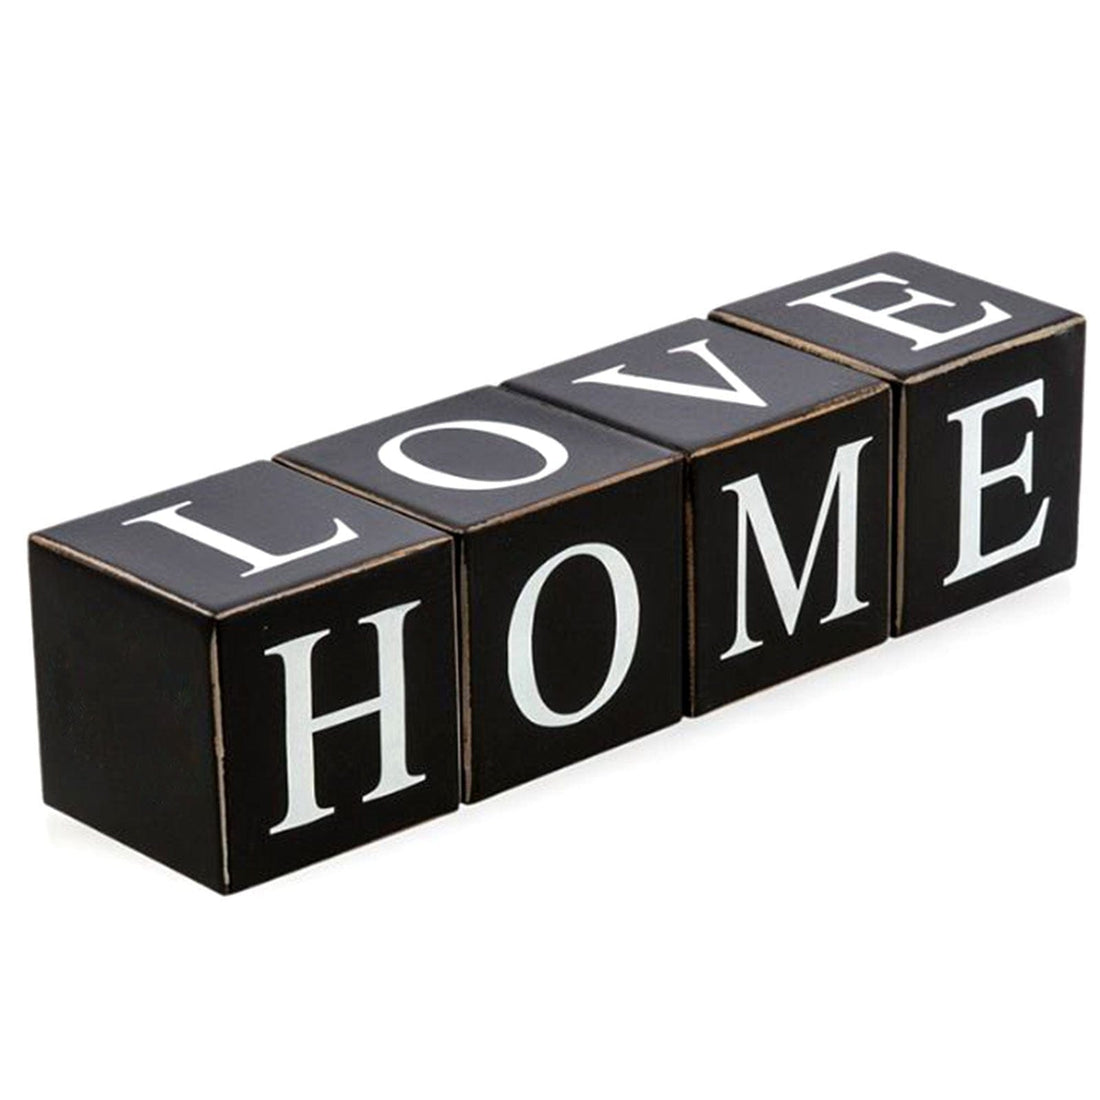 LOVE HOME Wooden Letter Blocks - Black.